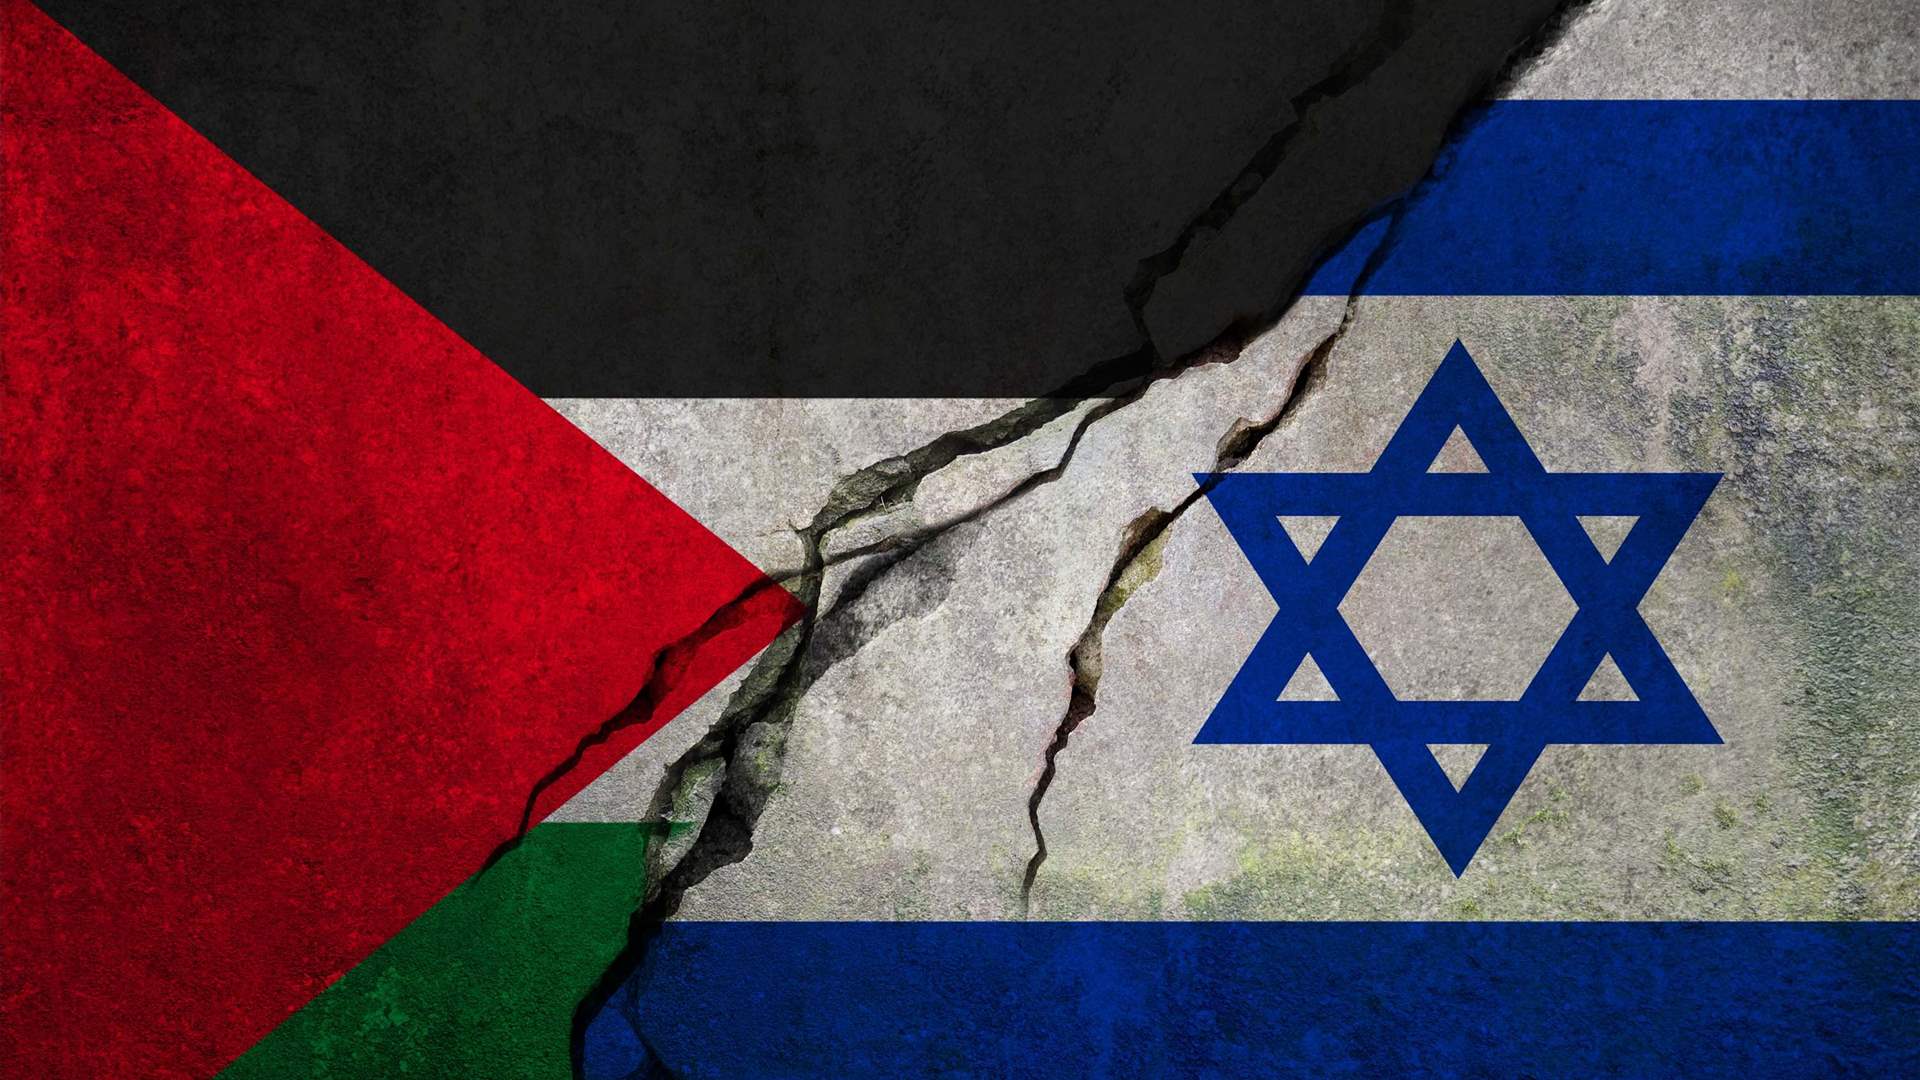 وزيران إسرائيليان ينتقدان خطة سلام لإقامة دولة فلسطينية